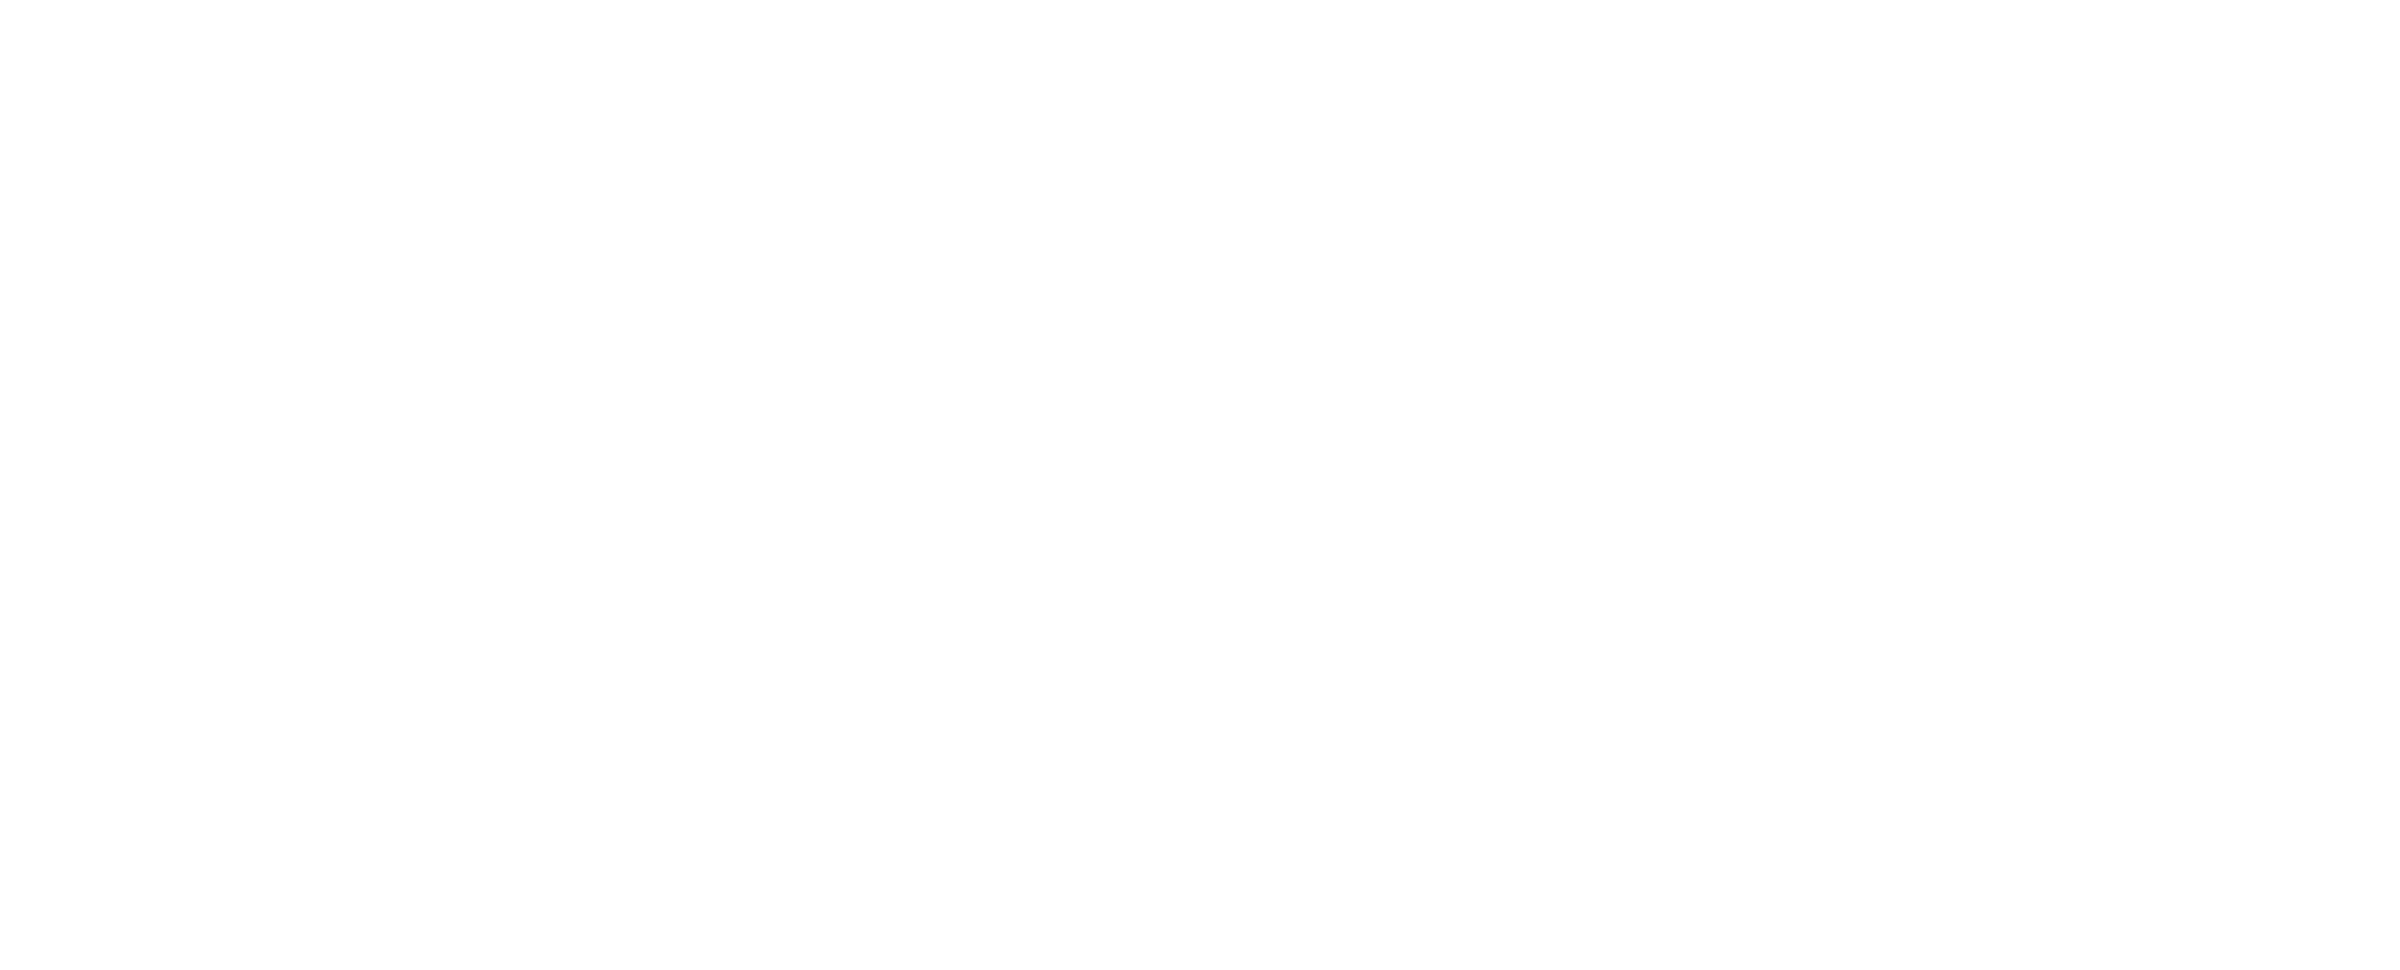 Bing It Logo - Bing Logo PNG Transparent & SVG Vector - Freebie Supply